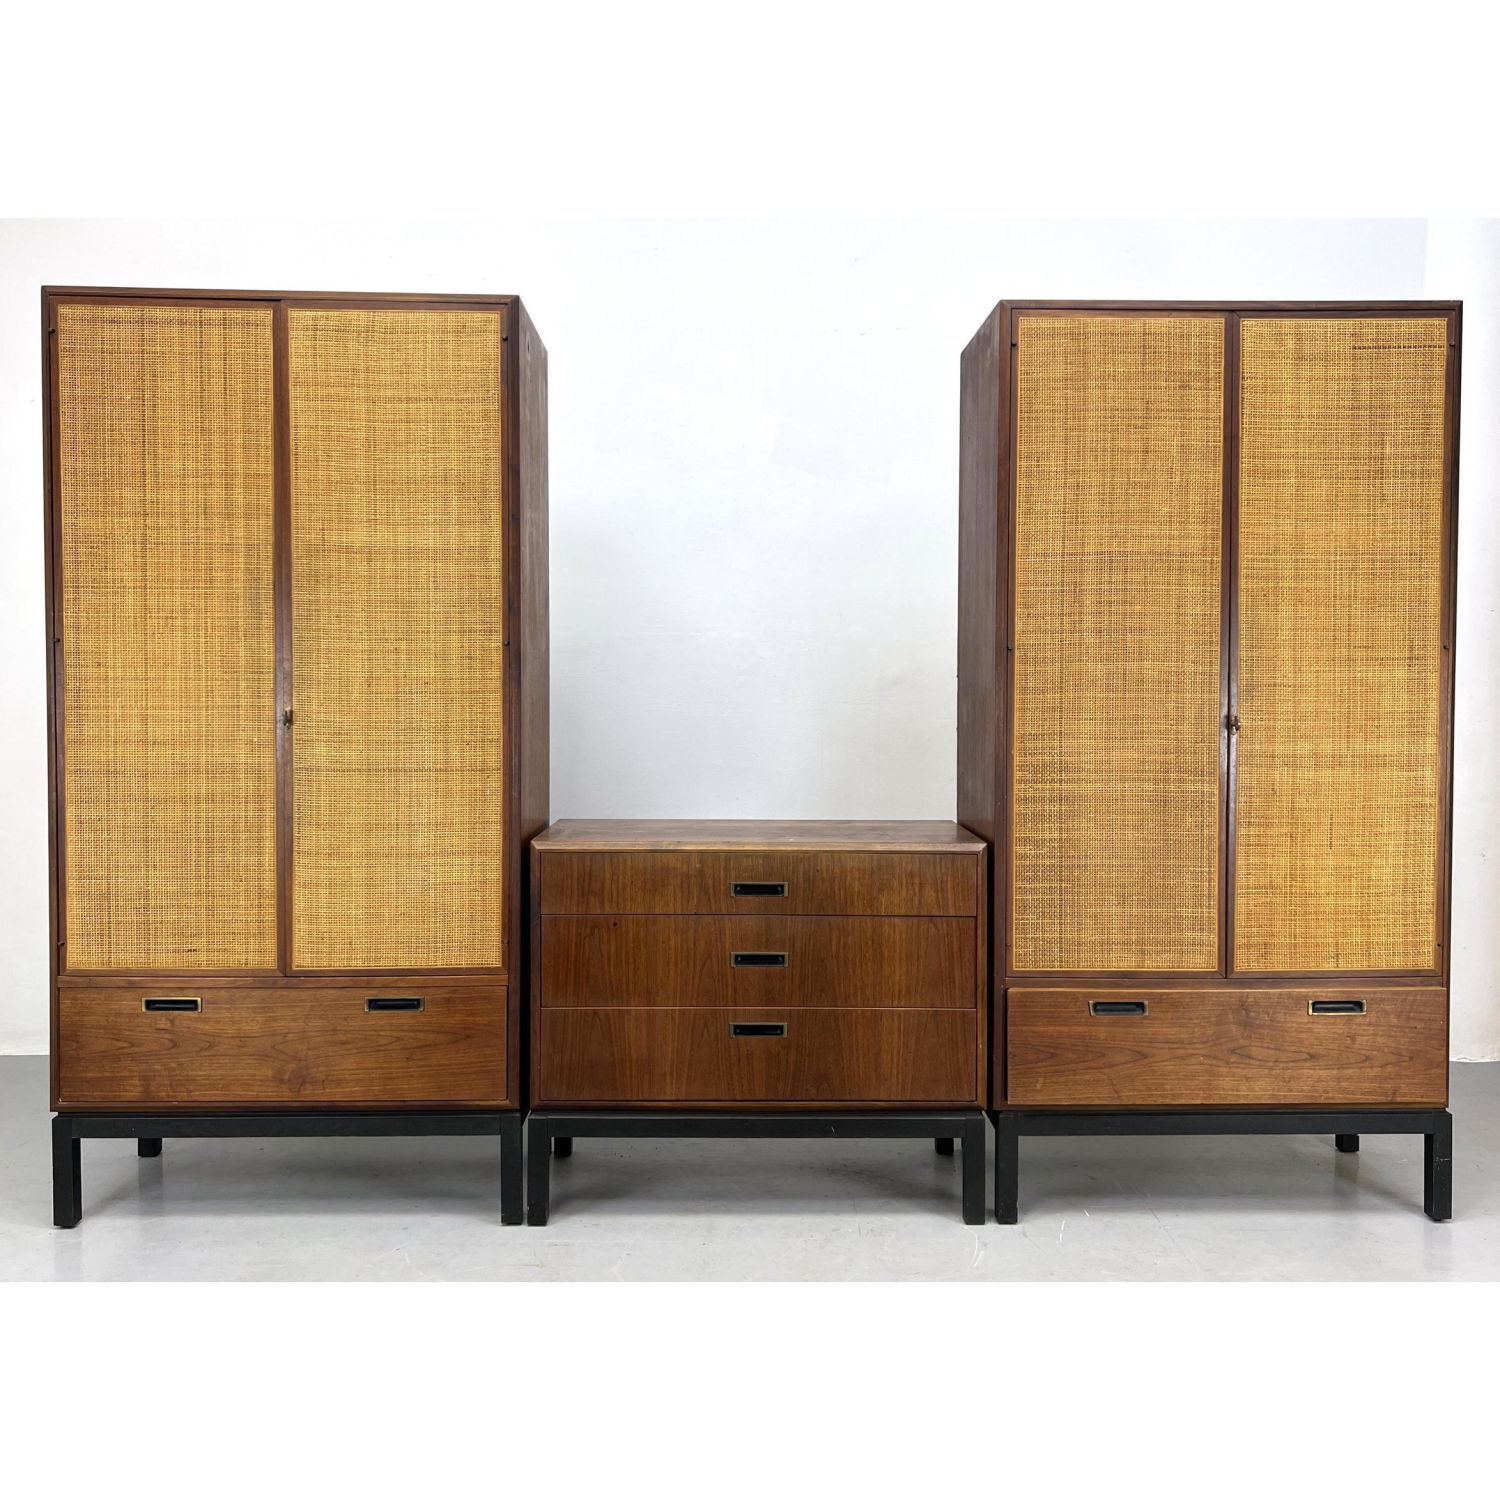 3pcs Milo Baughman Style Cabinets.